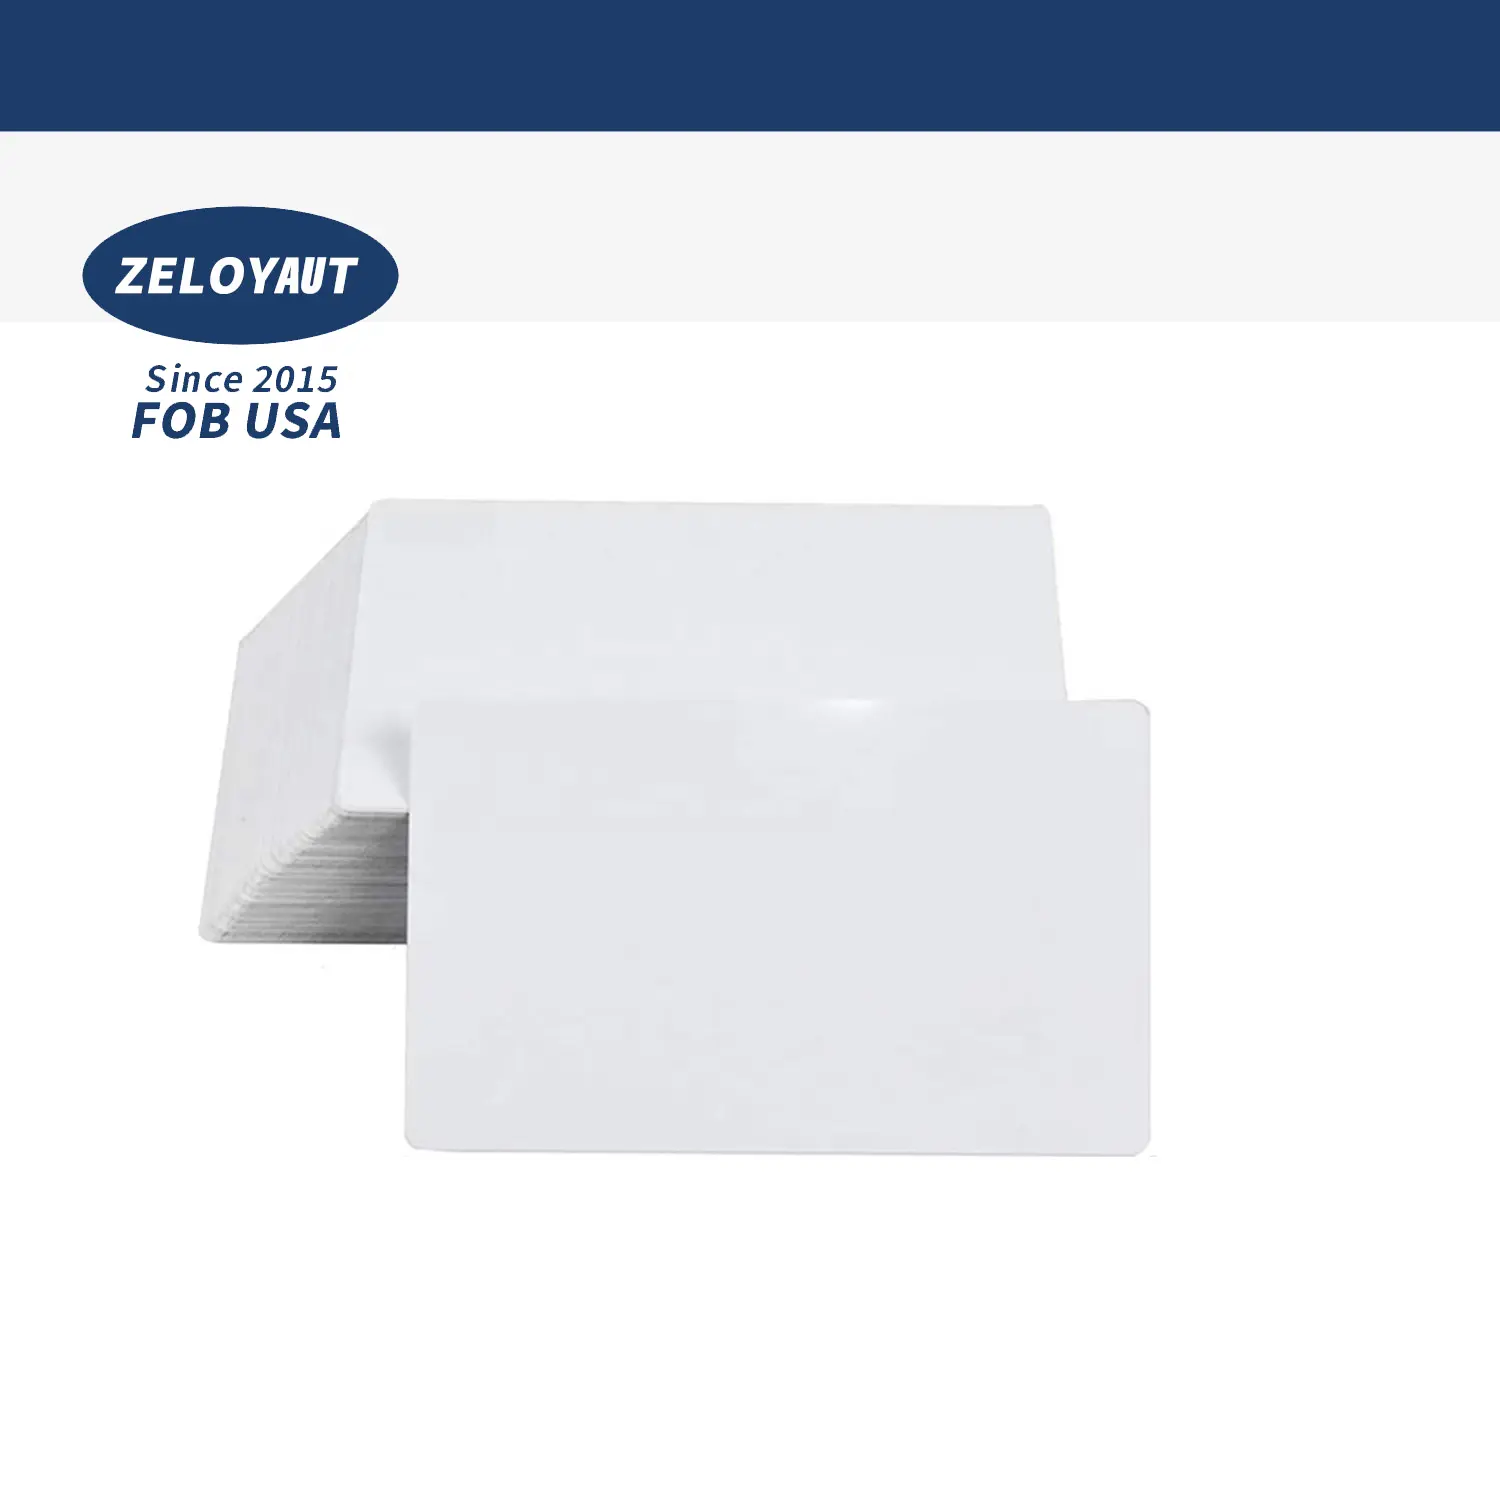 Zeloyaut FOB USA Cartão de identificação comercial de alumínio branco por sublimação com logotipo personalizado para exposição em exposição